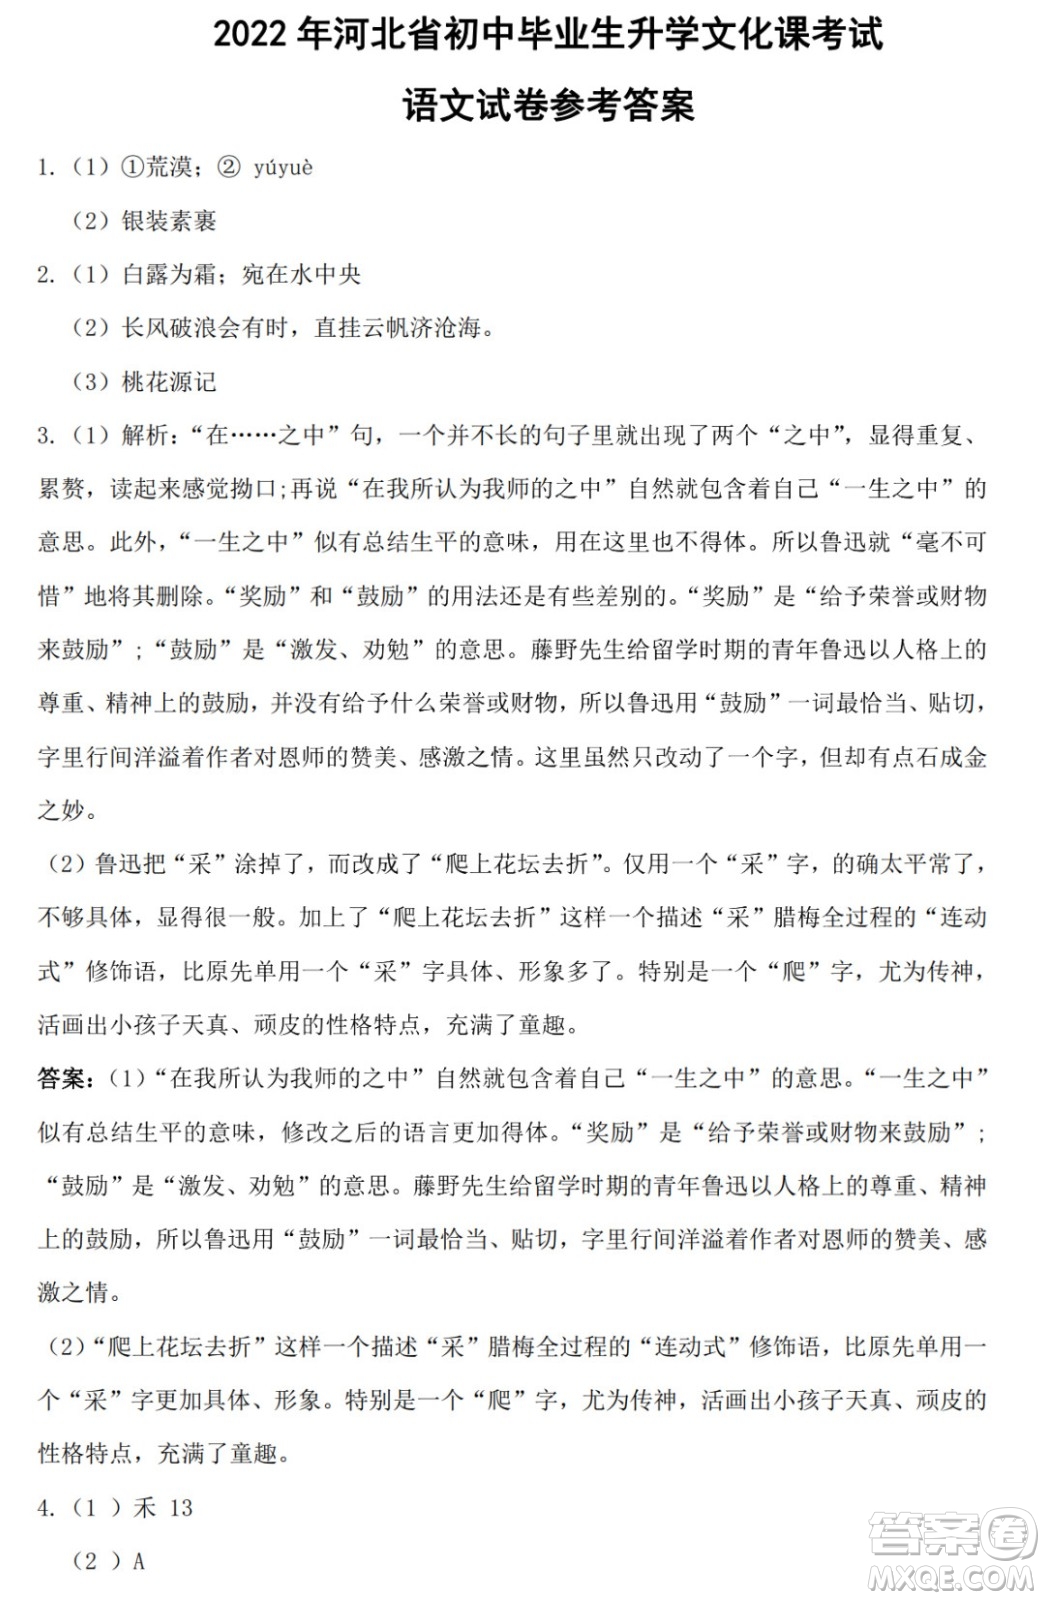 2022年河北省初中毕业生升学文化课考试语文试卷及答案插图(9)